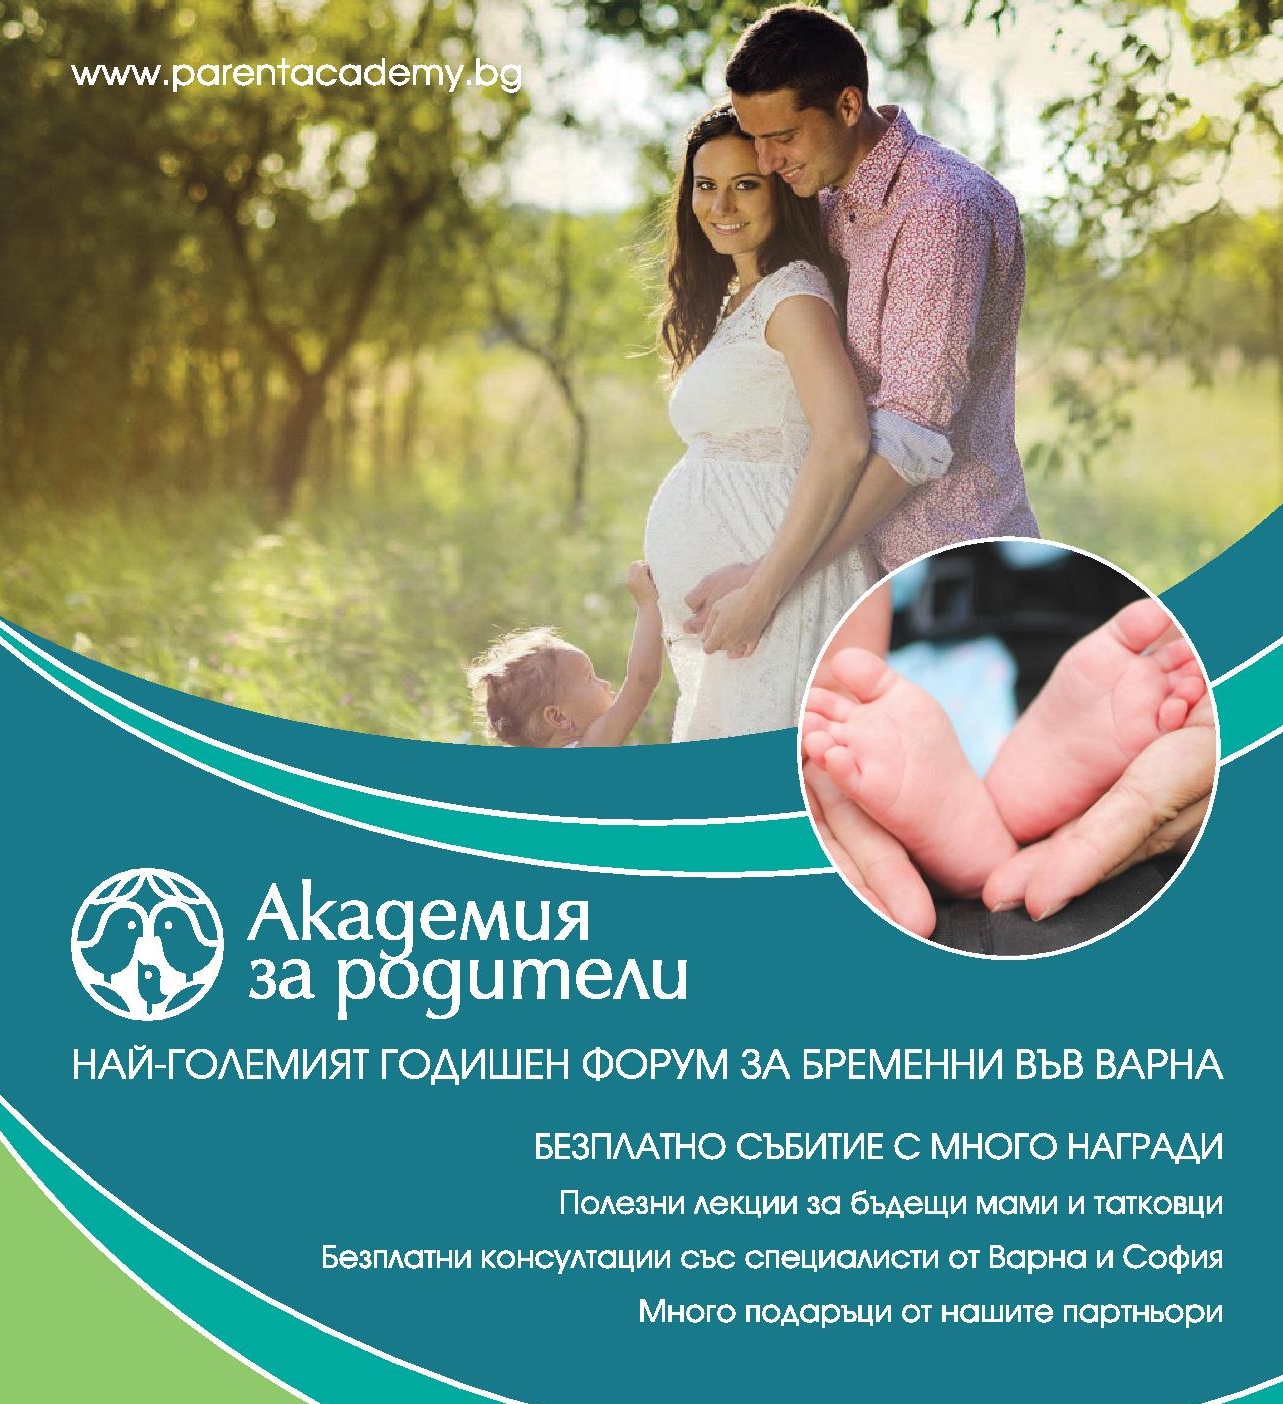 Най-големият семеен форум „Академия за Родители” отново във Варна